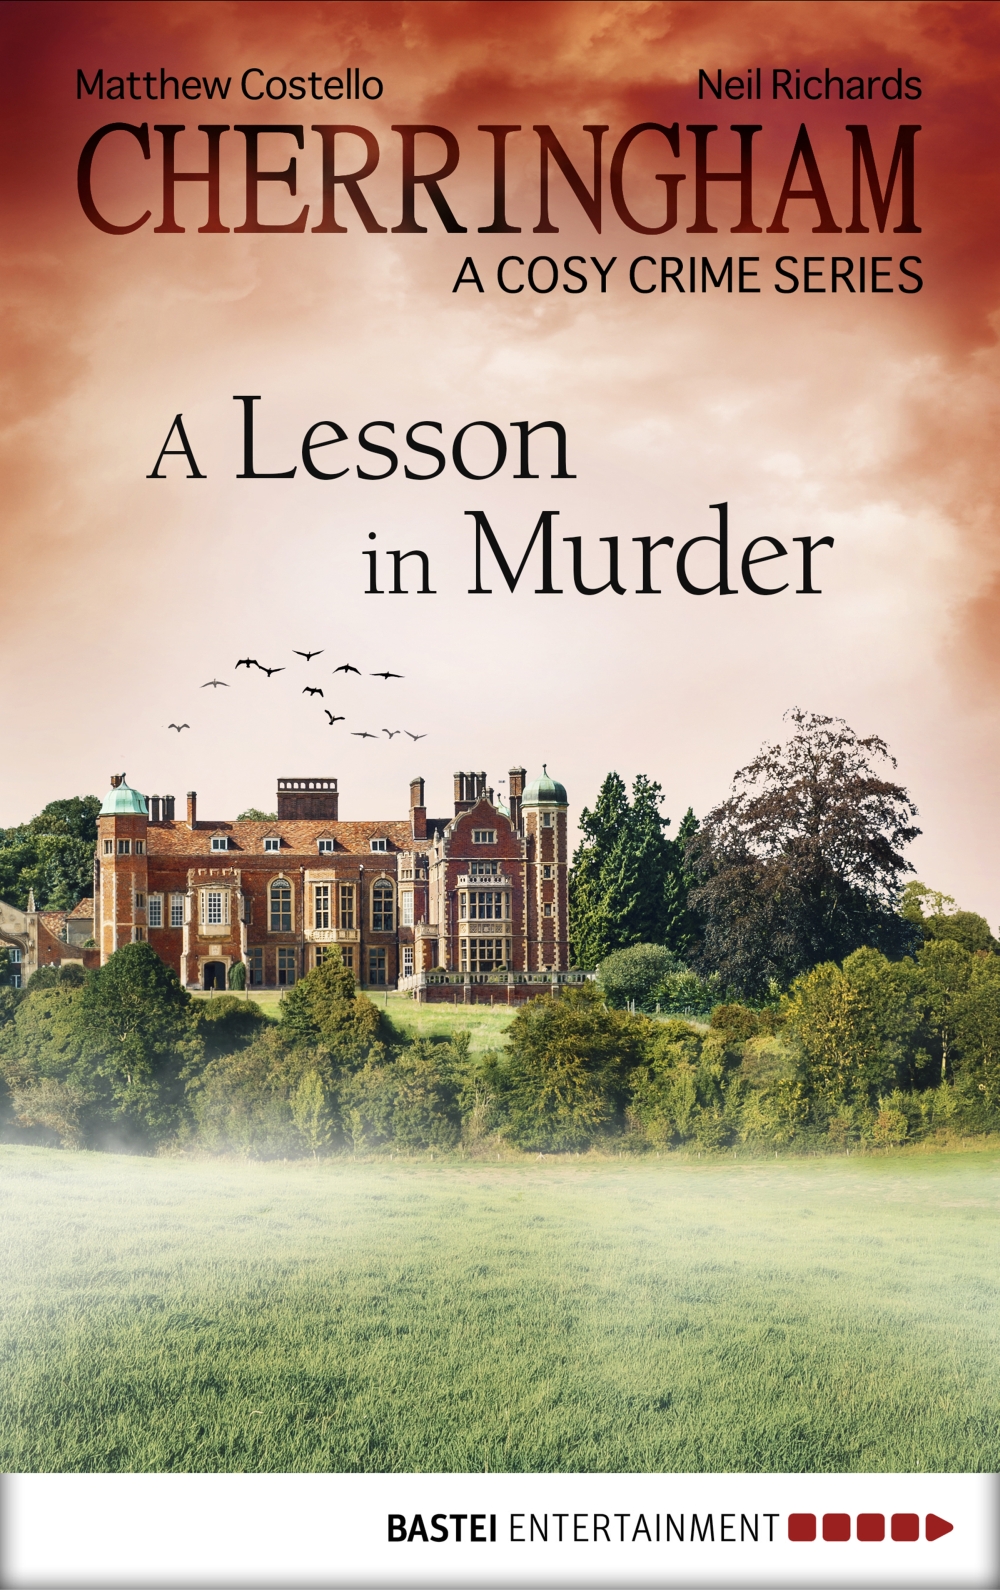 Cherringham--A Lesson in Murder (2015) by Neil Richards